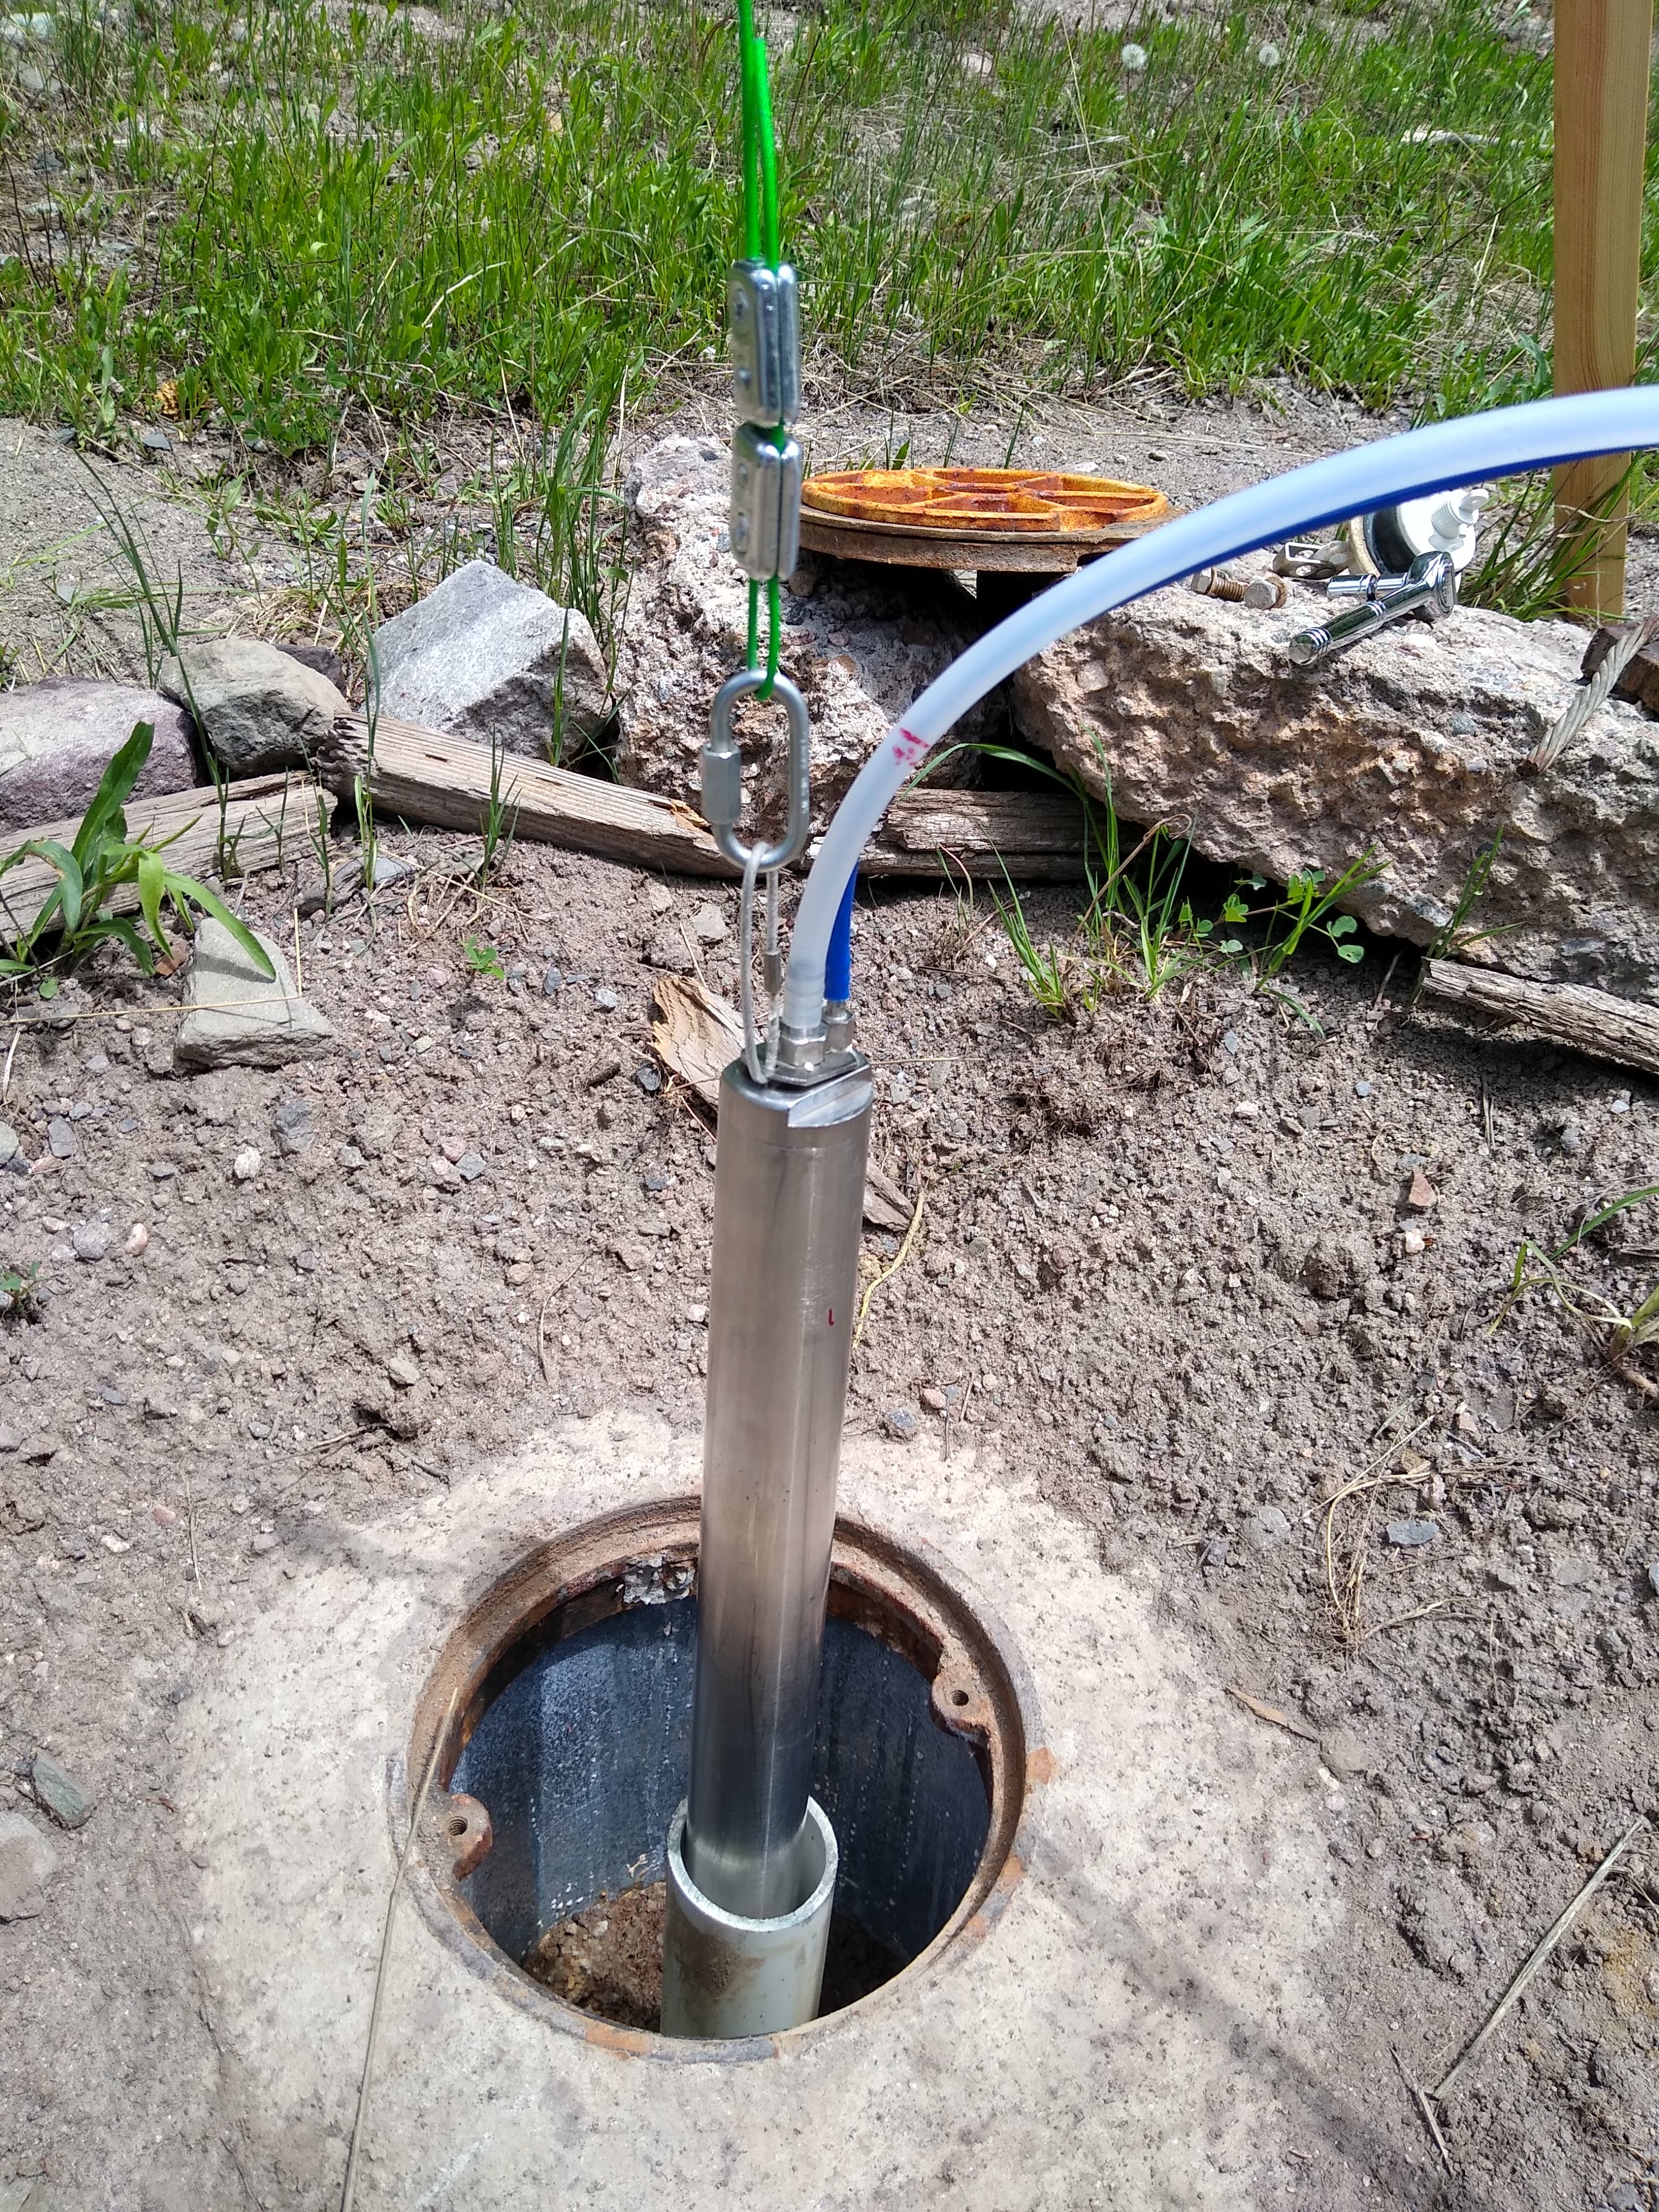 Groundwater sampling